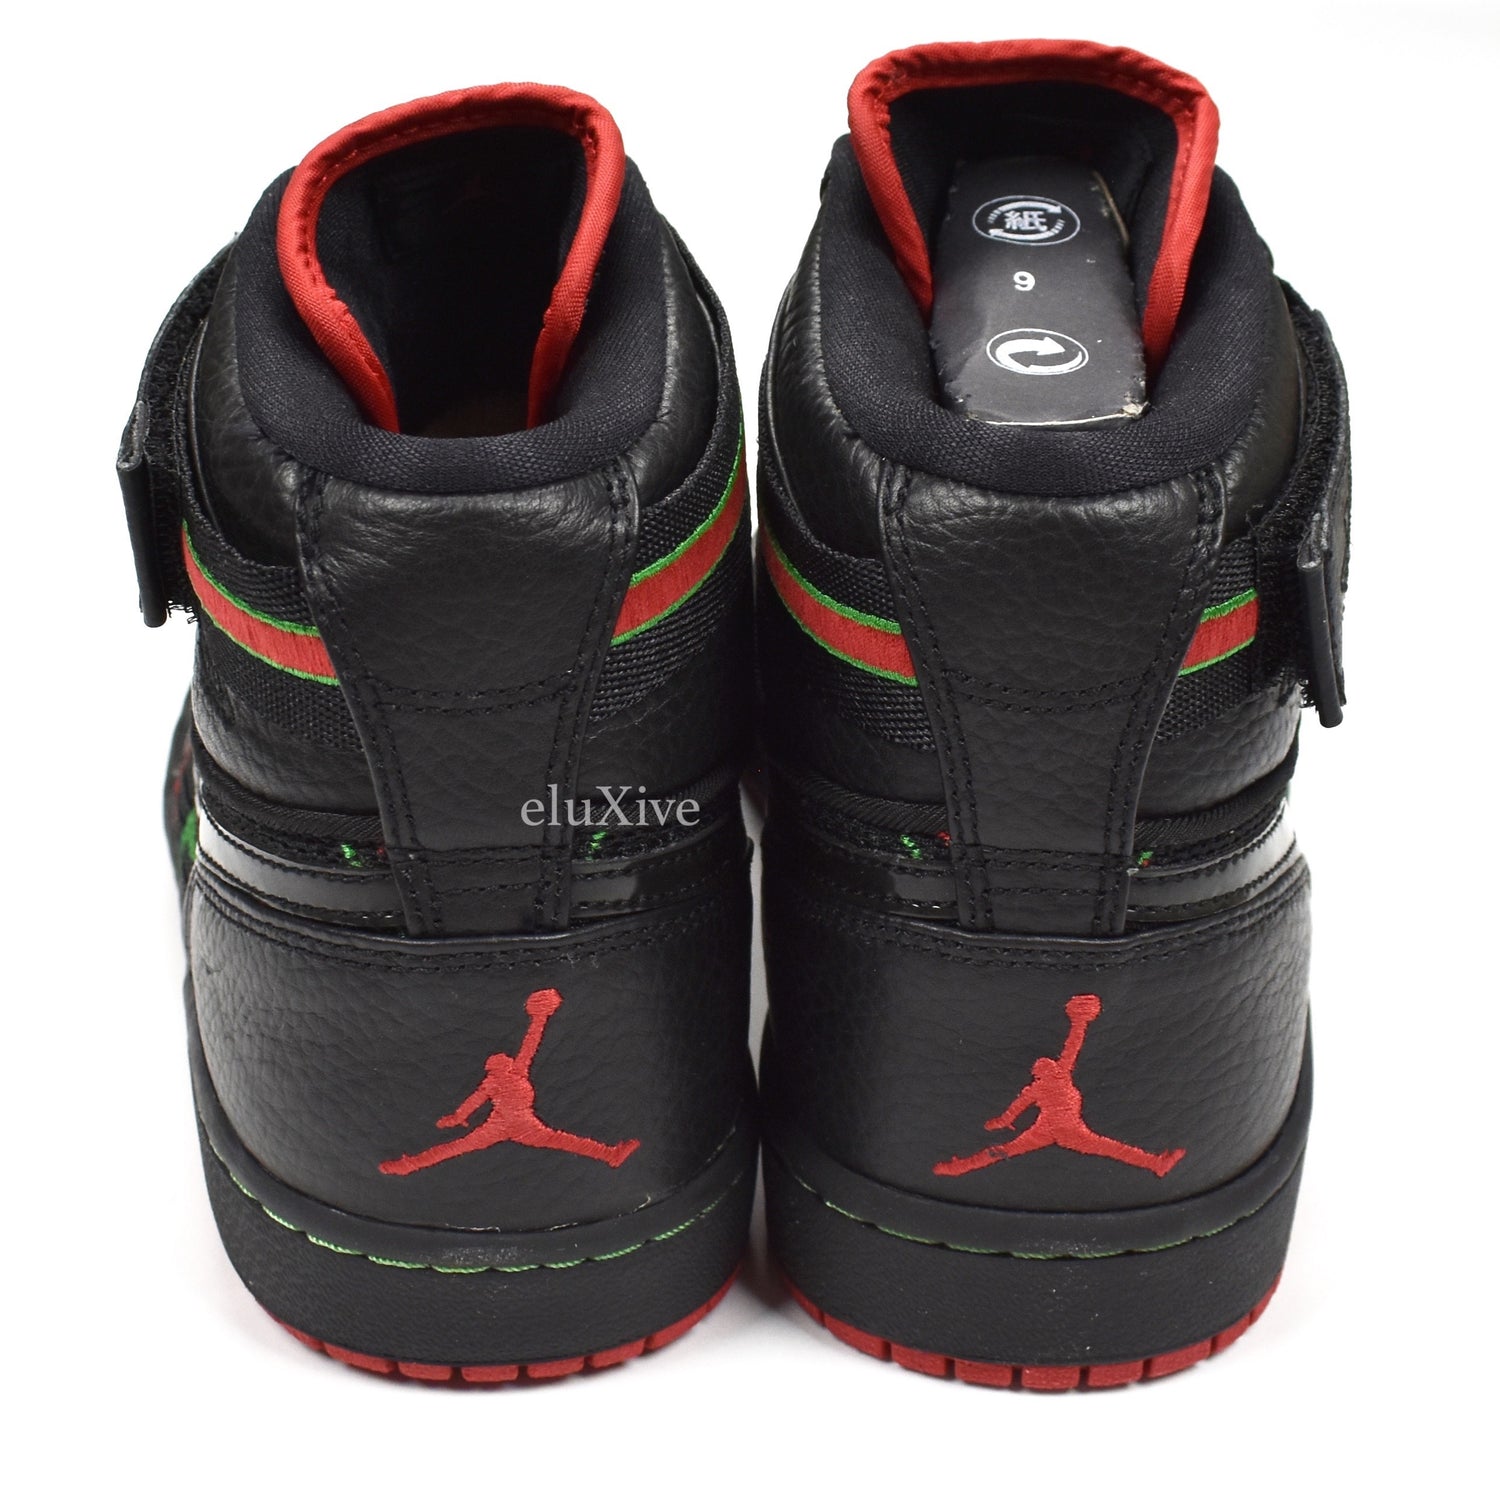 Air Jordan 1 High Strap A Tribe Called Quest  Air jordans, Air jordan  sneakers, Sports shoes outfit